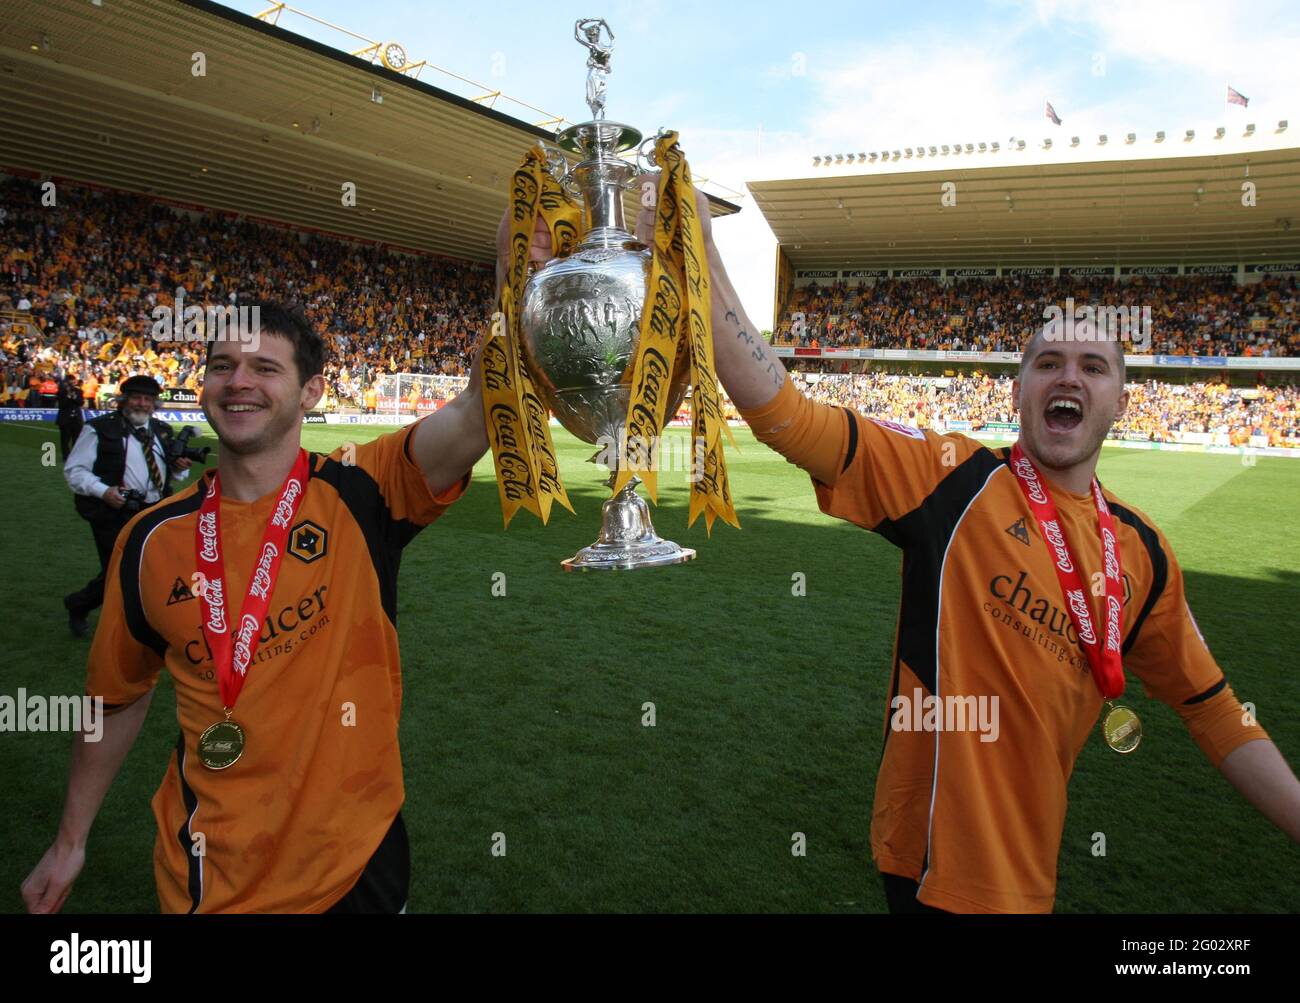 File foto datata 03-05-2009 di Wolverhampton Wanderers' Matt Jarvis (a sinistra) e Michael Kightly con il Football League Championship Trophy. Data di emissione: Lunedì 31 maggio 2021. Foto Stock